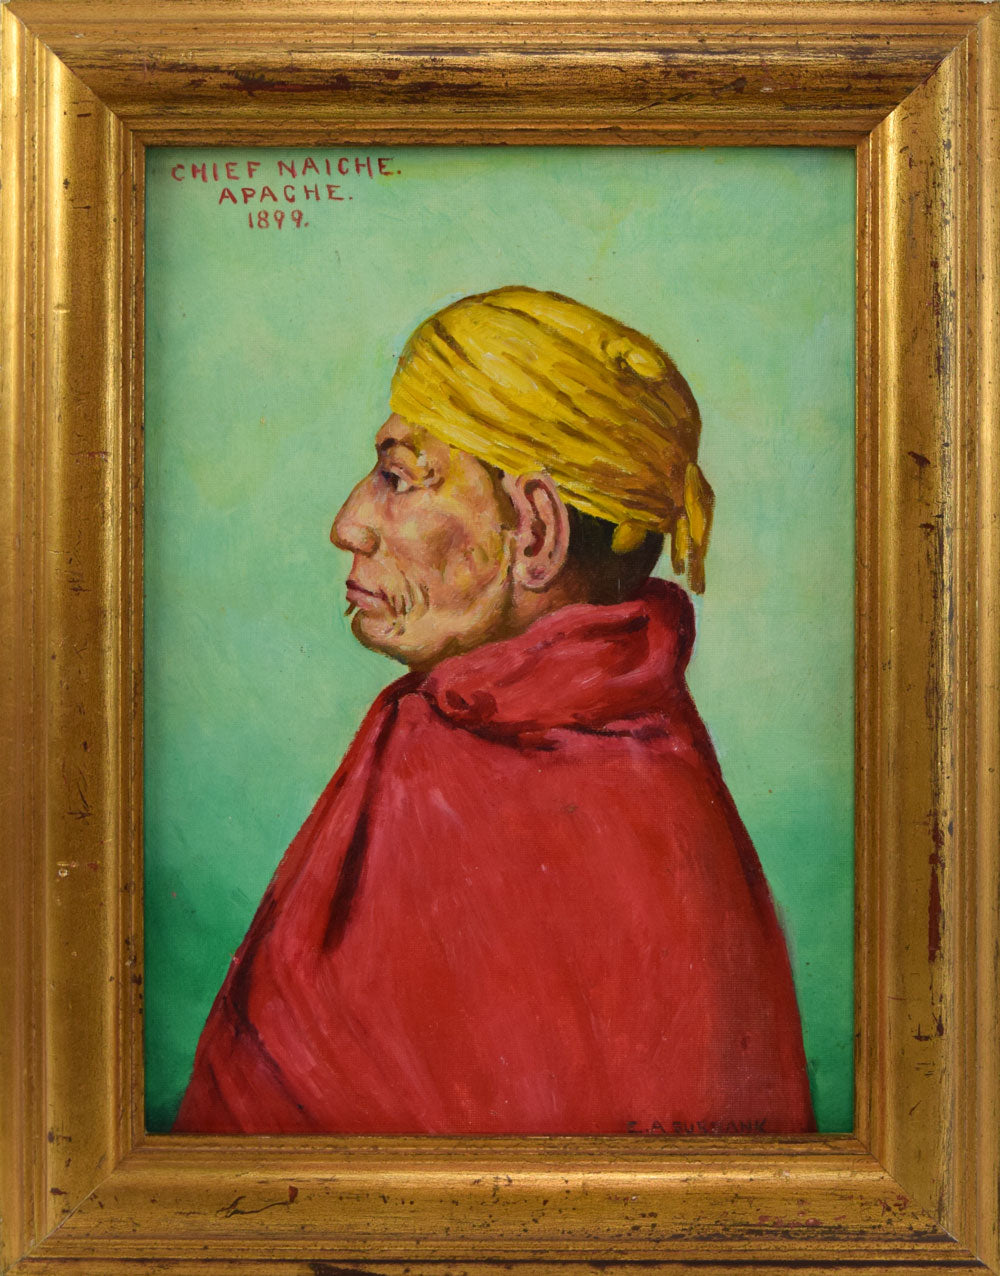 SOLD E. A. Burbank (1858-1949) - Chief Naiche, Apache